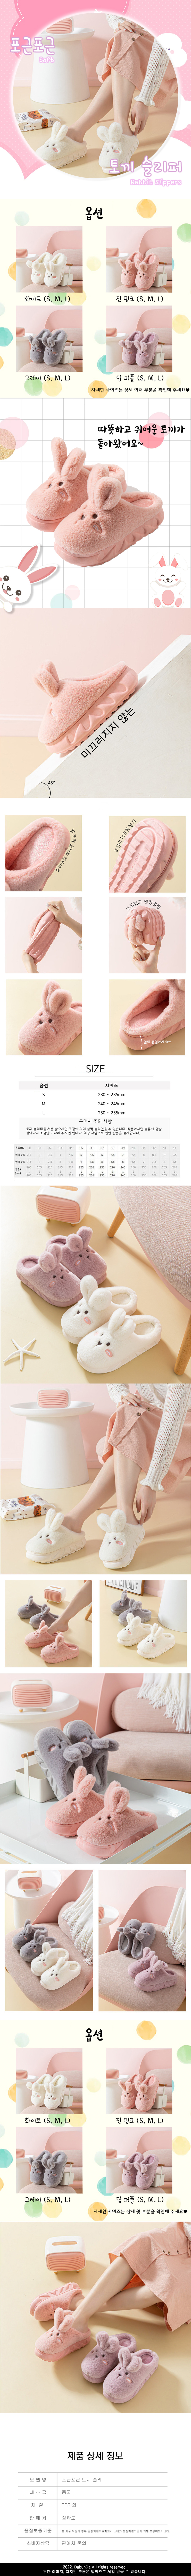 Soft Rabbit Slippers.jpg